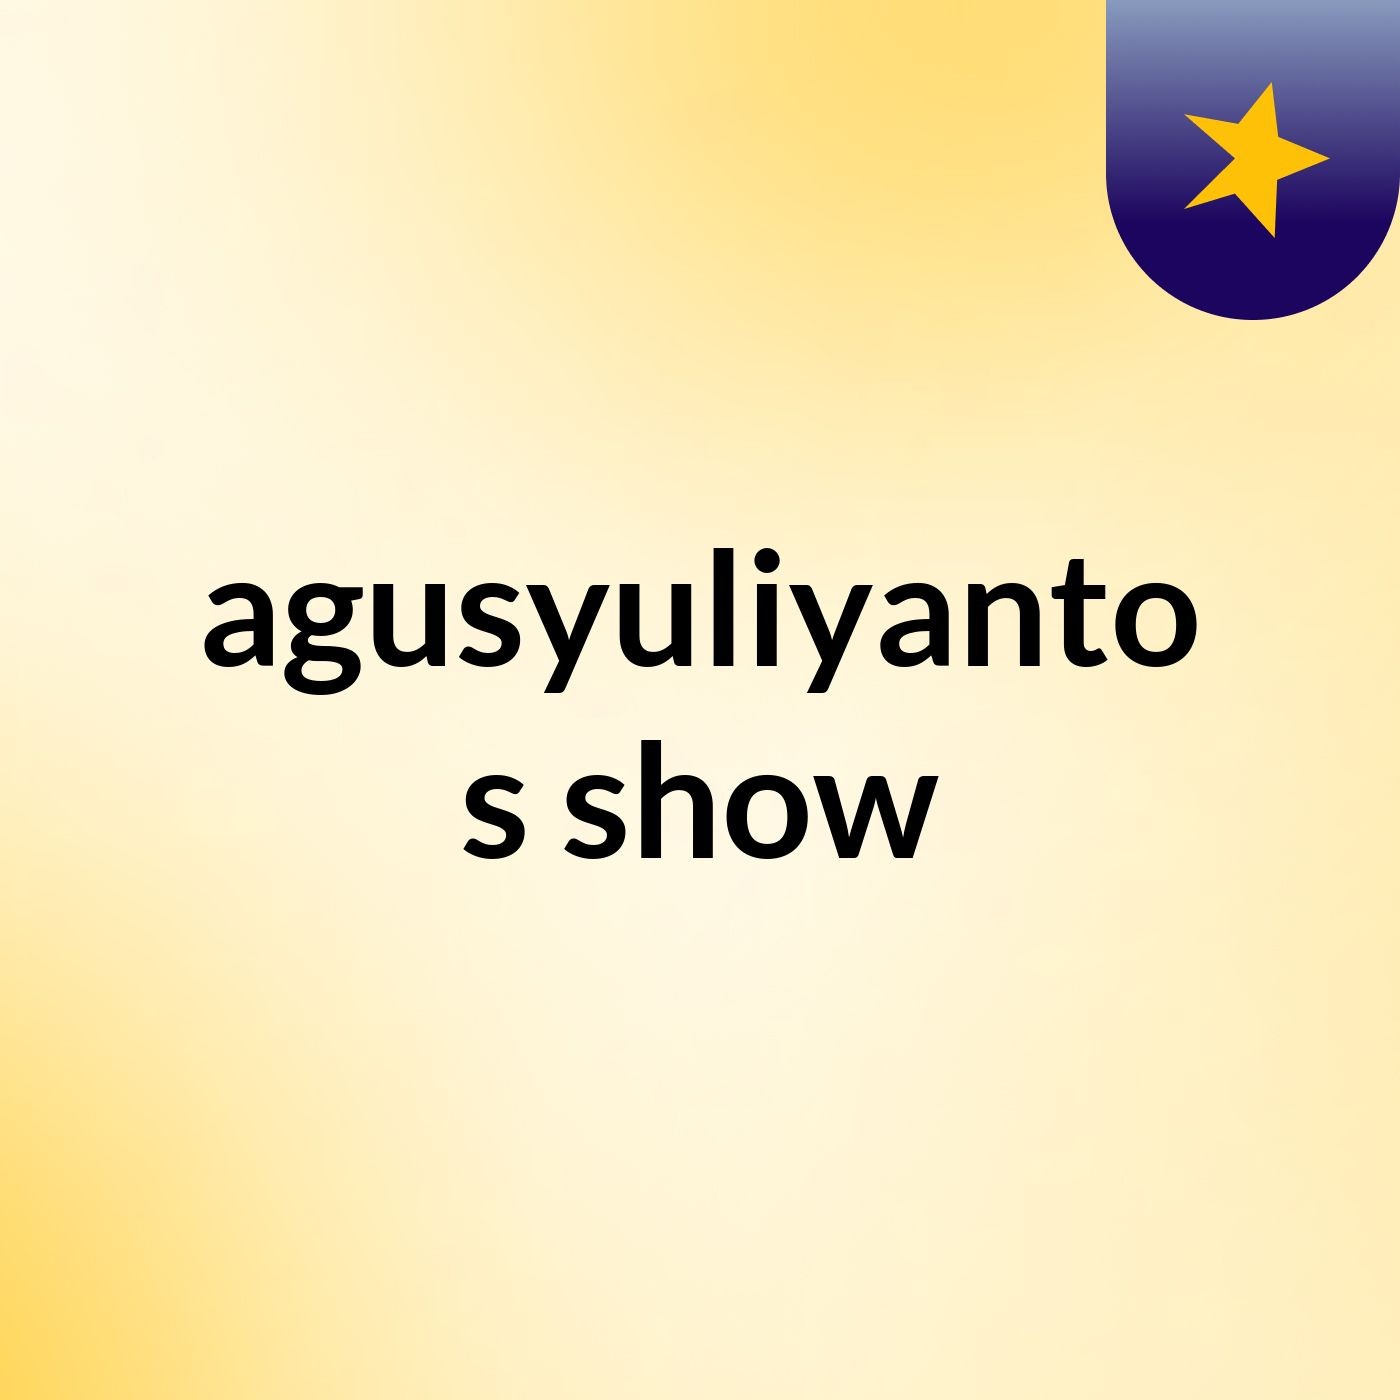 agusyuliyanto's show